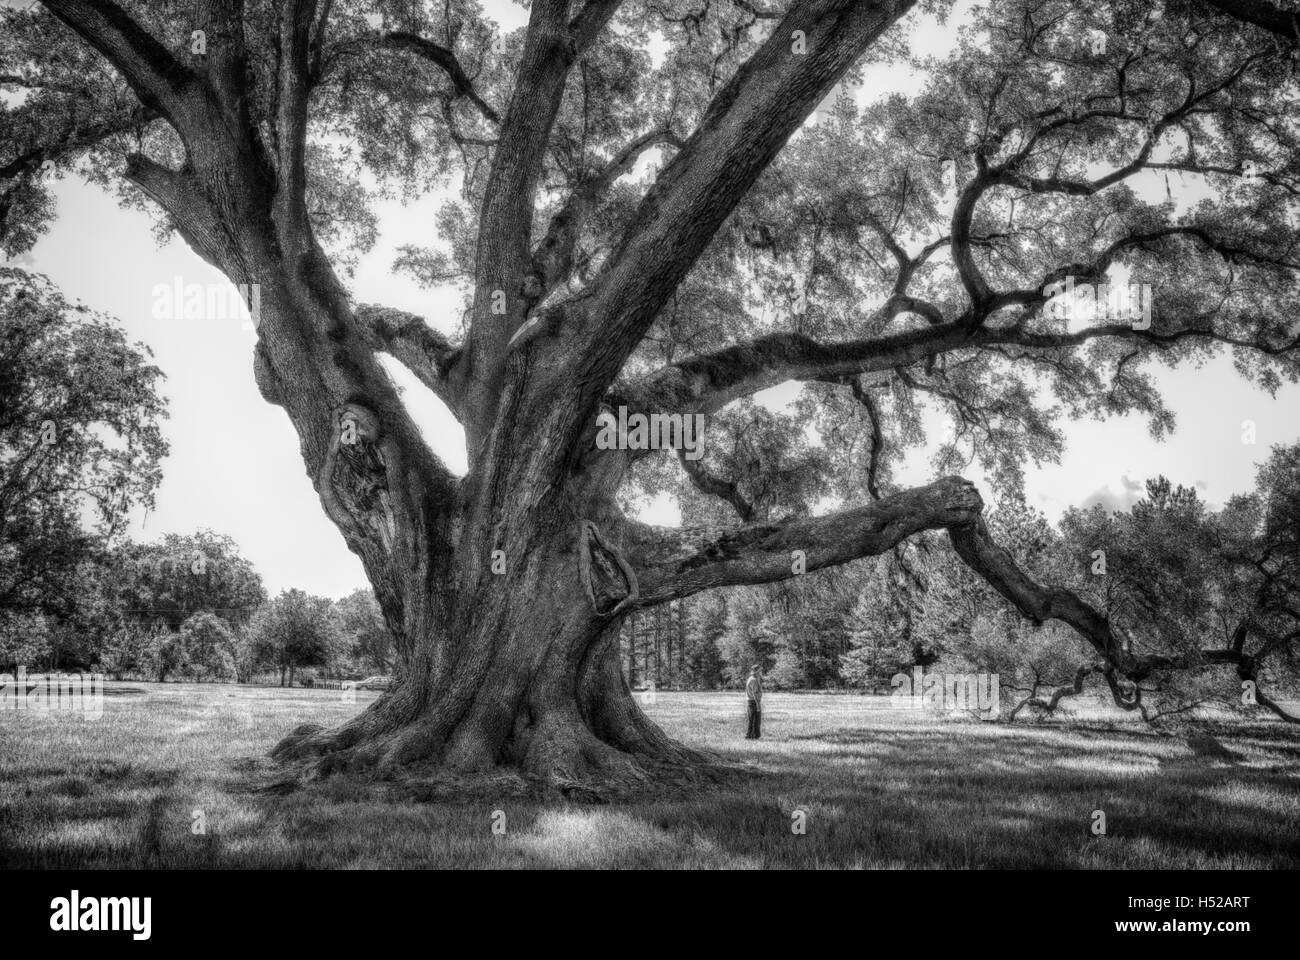 El cellon Oak Park cerca de Gainesville, Florida, contiene el campeón del estado de Florida Live Oak. Es un parque del condado de alachua. Foto de stock